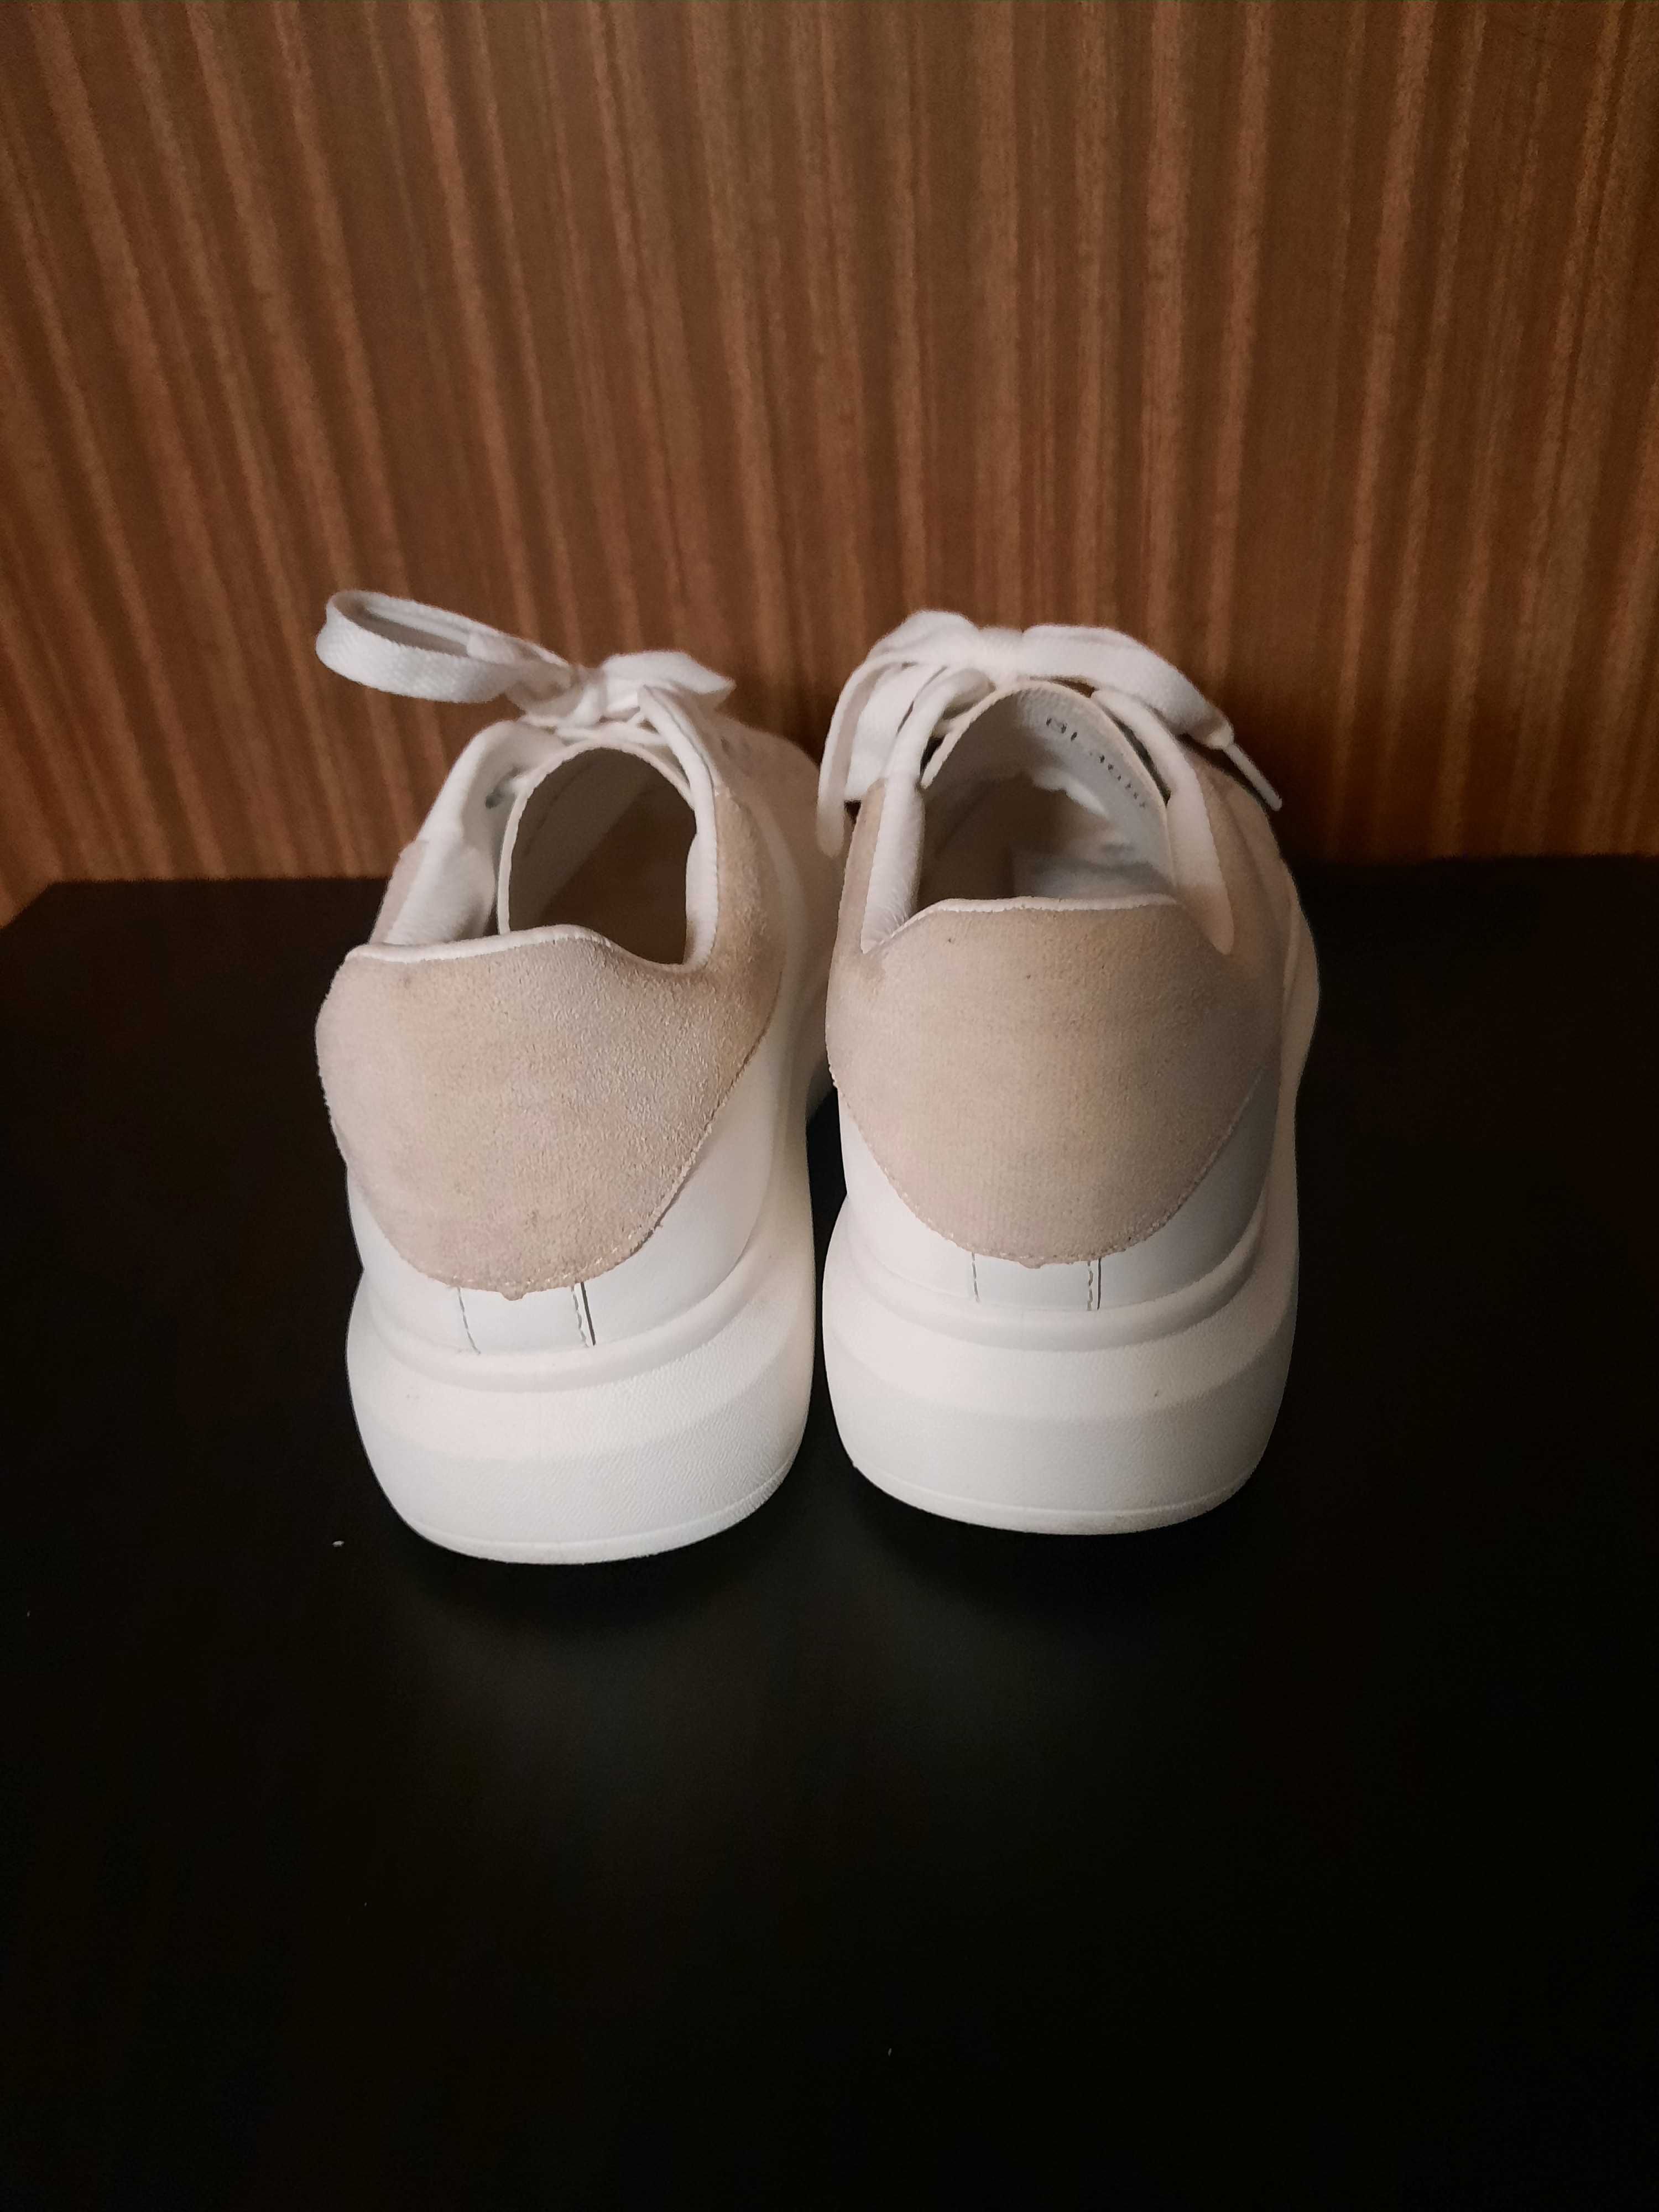 Buty damskie białe rozmiar 39